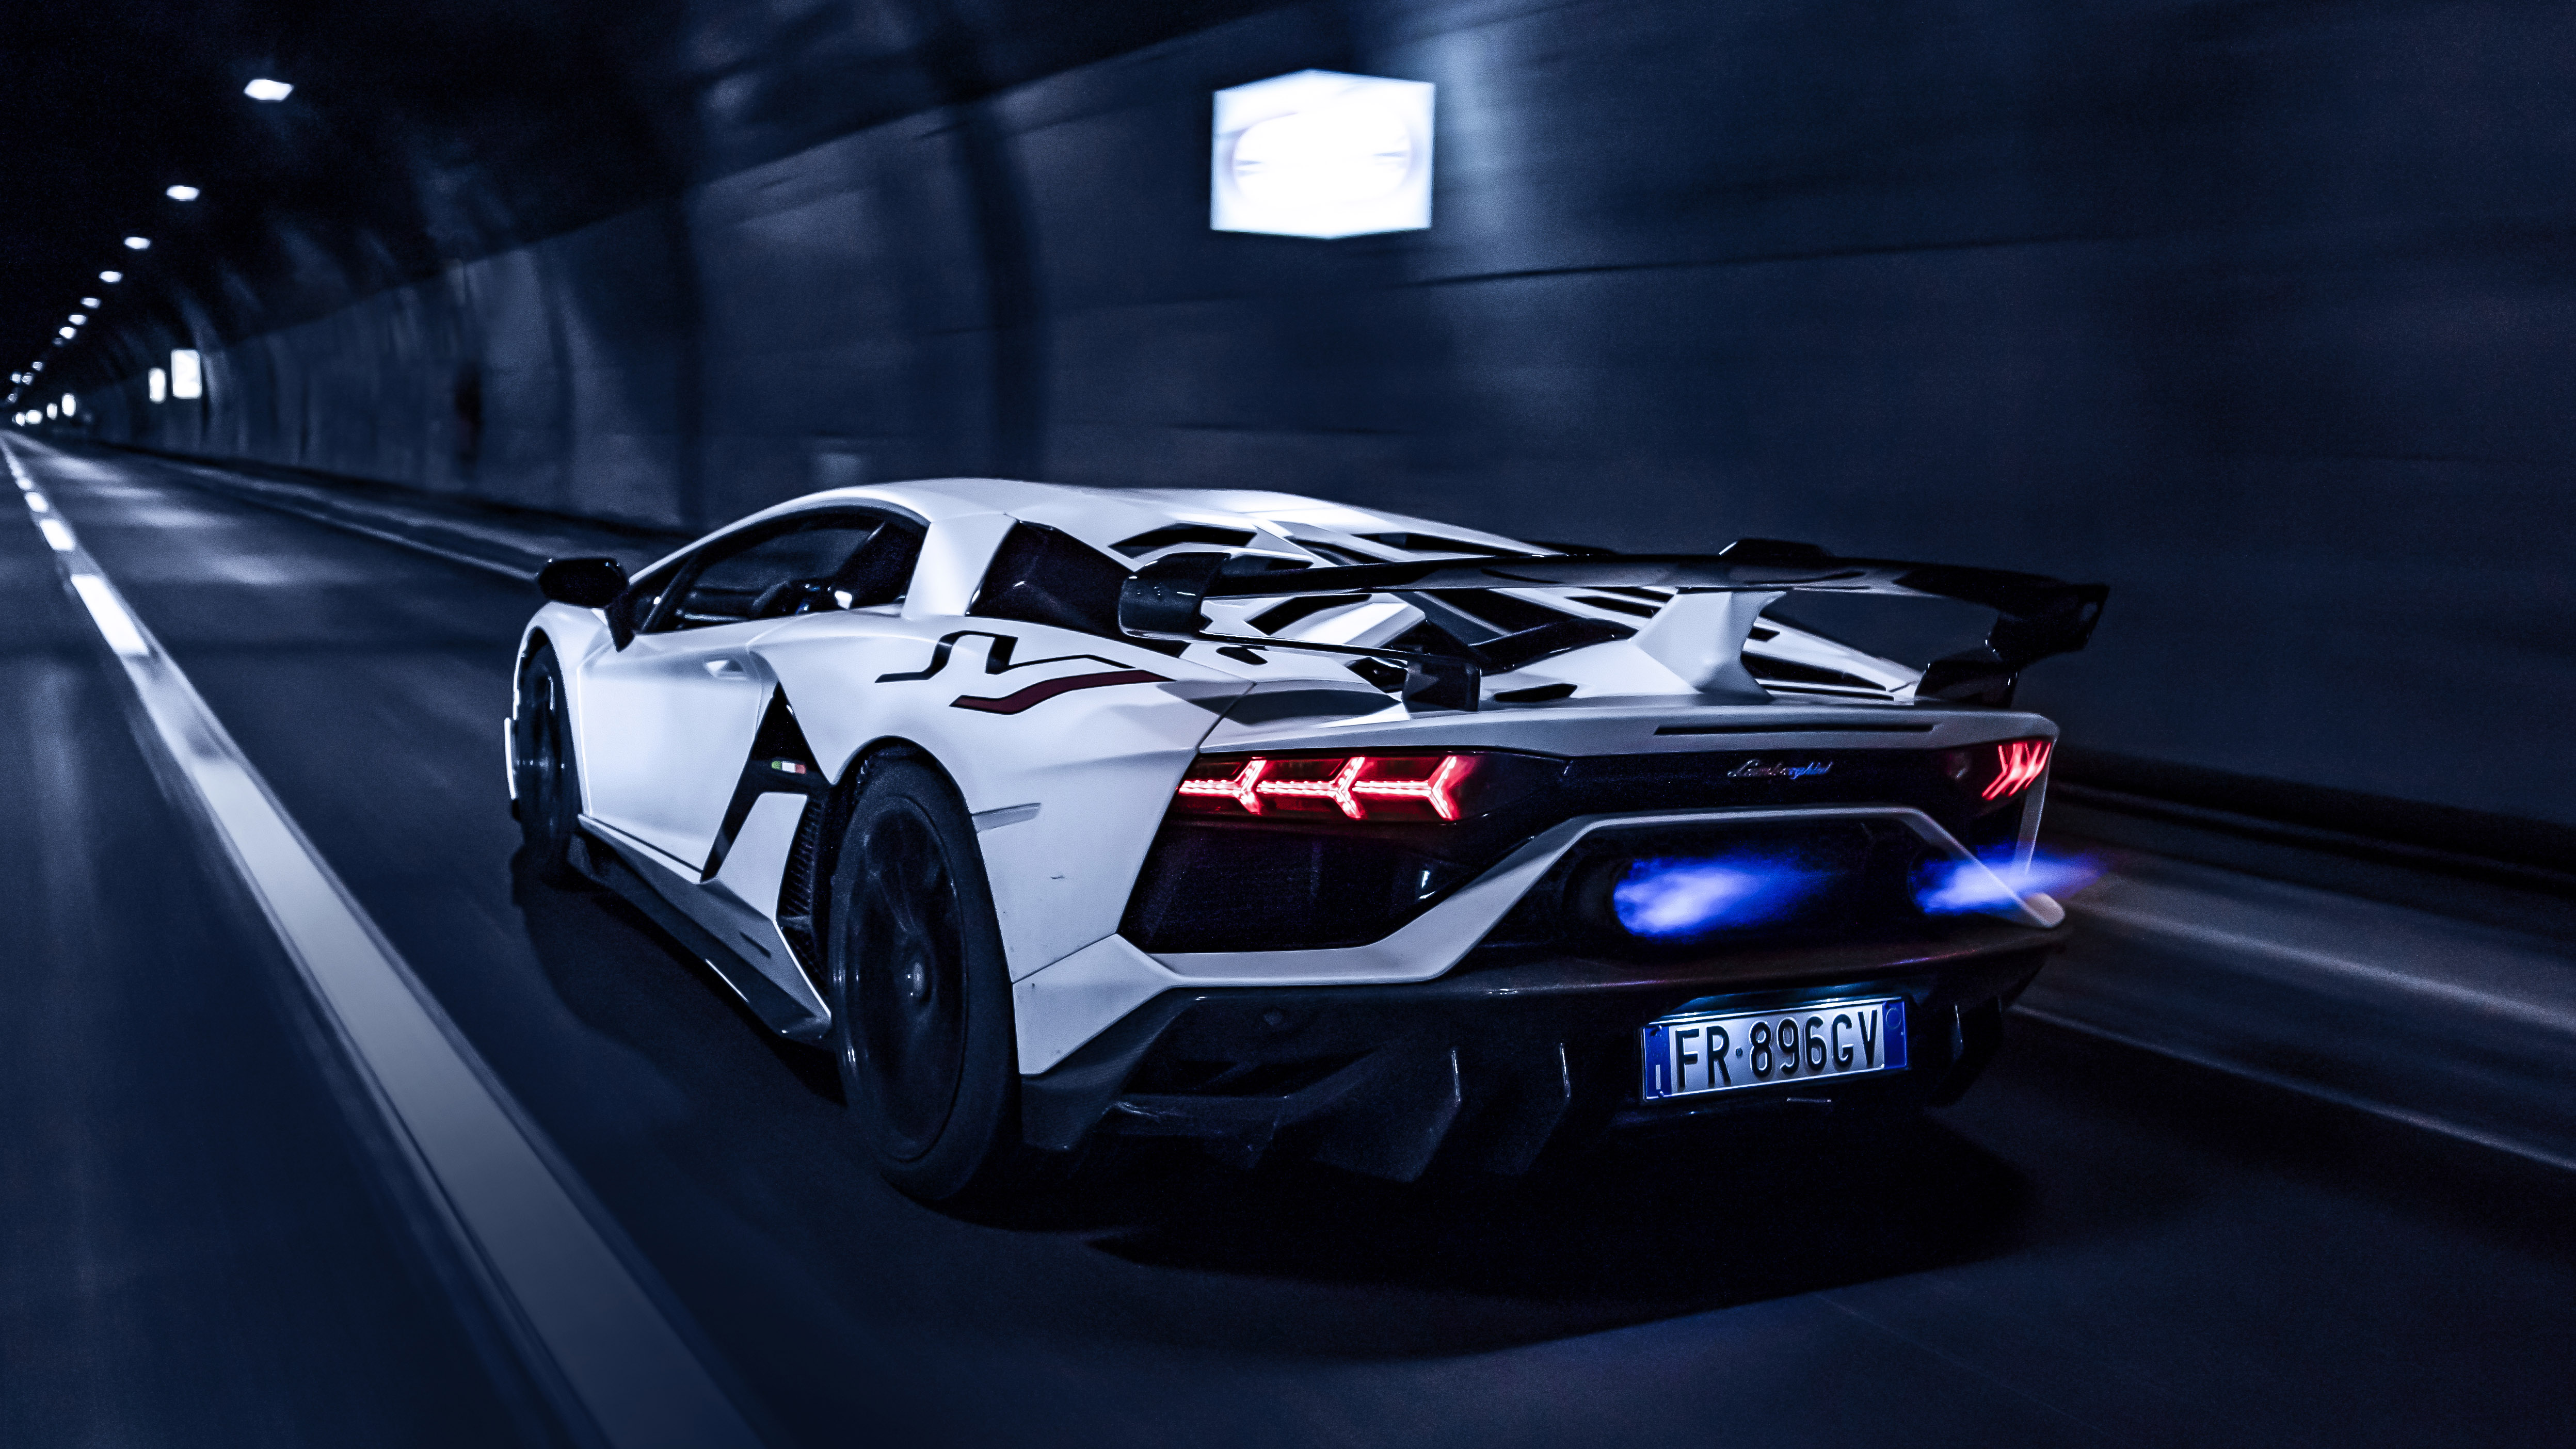 Siêu xe Lamborghini - biểu tượng của tốc độ và sự sang trọng. Dường như chỉ nhìn vào hình ảnh, bạn cũng có thể cảm nhận được tốc độ và sự chuyên nghiệp của loại siêu xe này. Hãy để hình ảnh này thôi nôi lên niềm đam mê và cảm giác mạnh mẽ, giống như khi bạn tự lái chiếc xe Lamborghini trên đường đua vô tận.